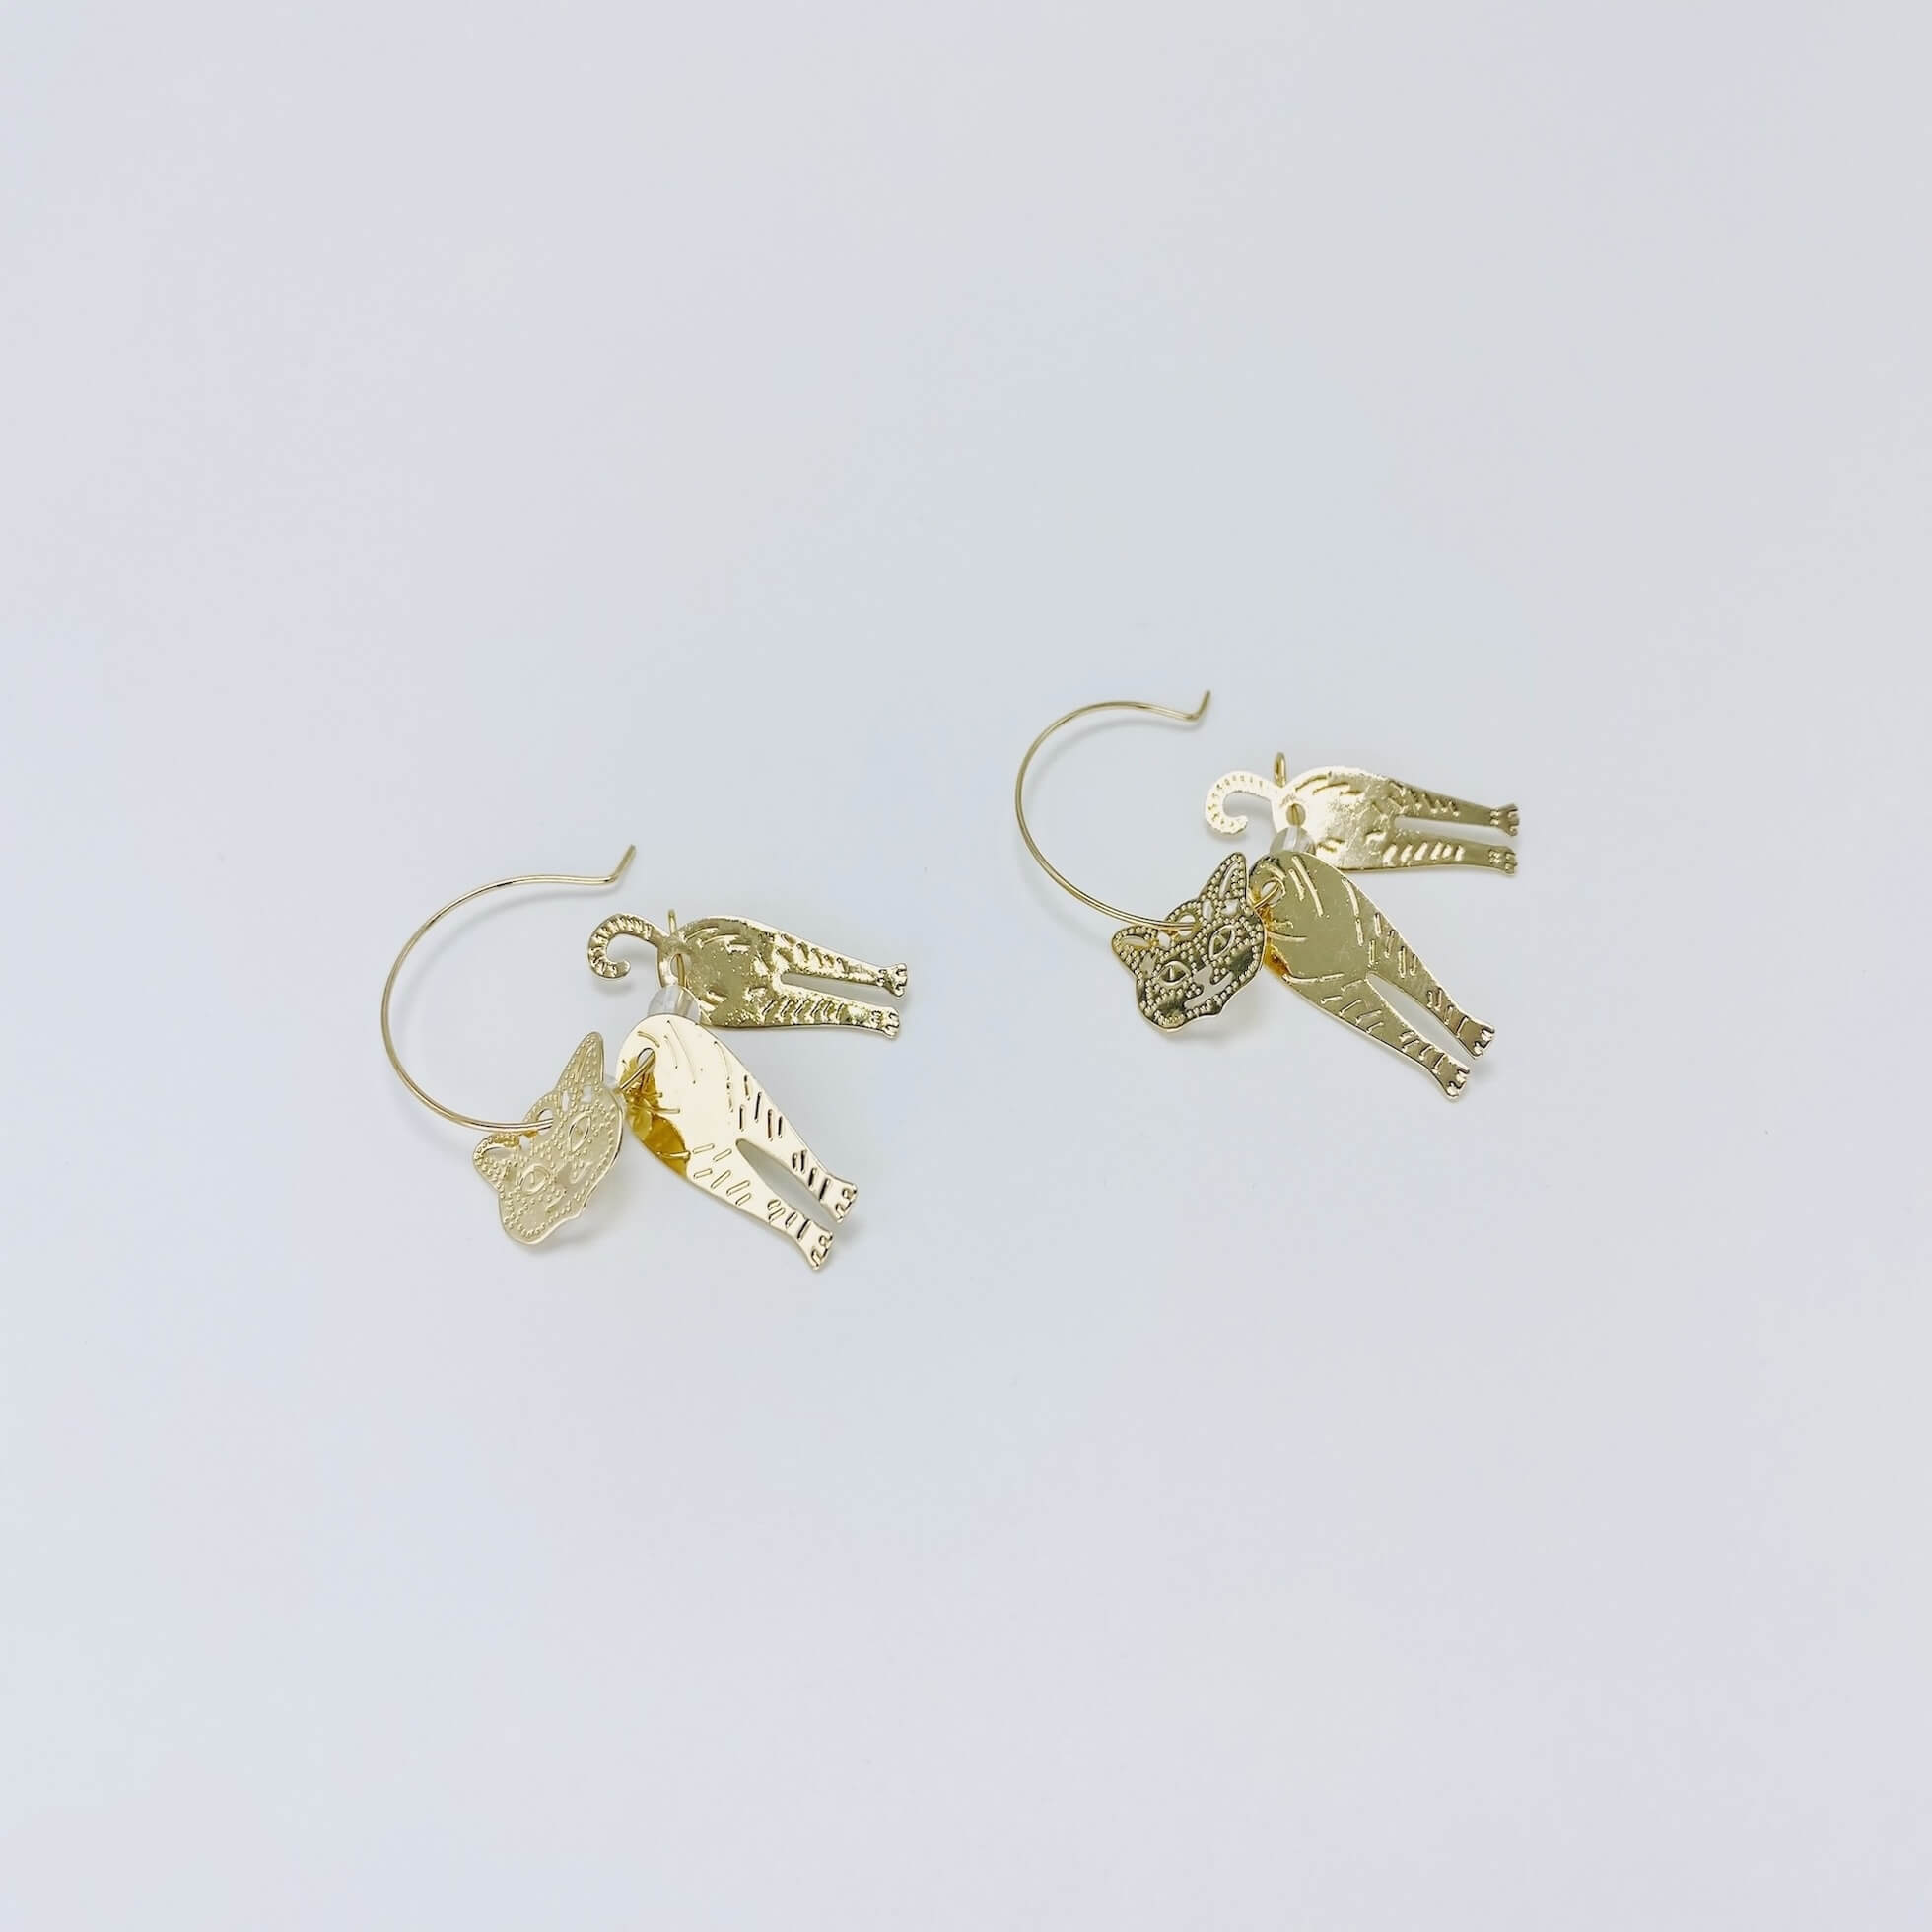 Metallic rose gold cat hoop earrings.